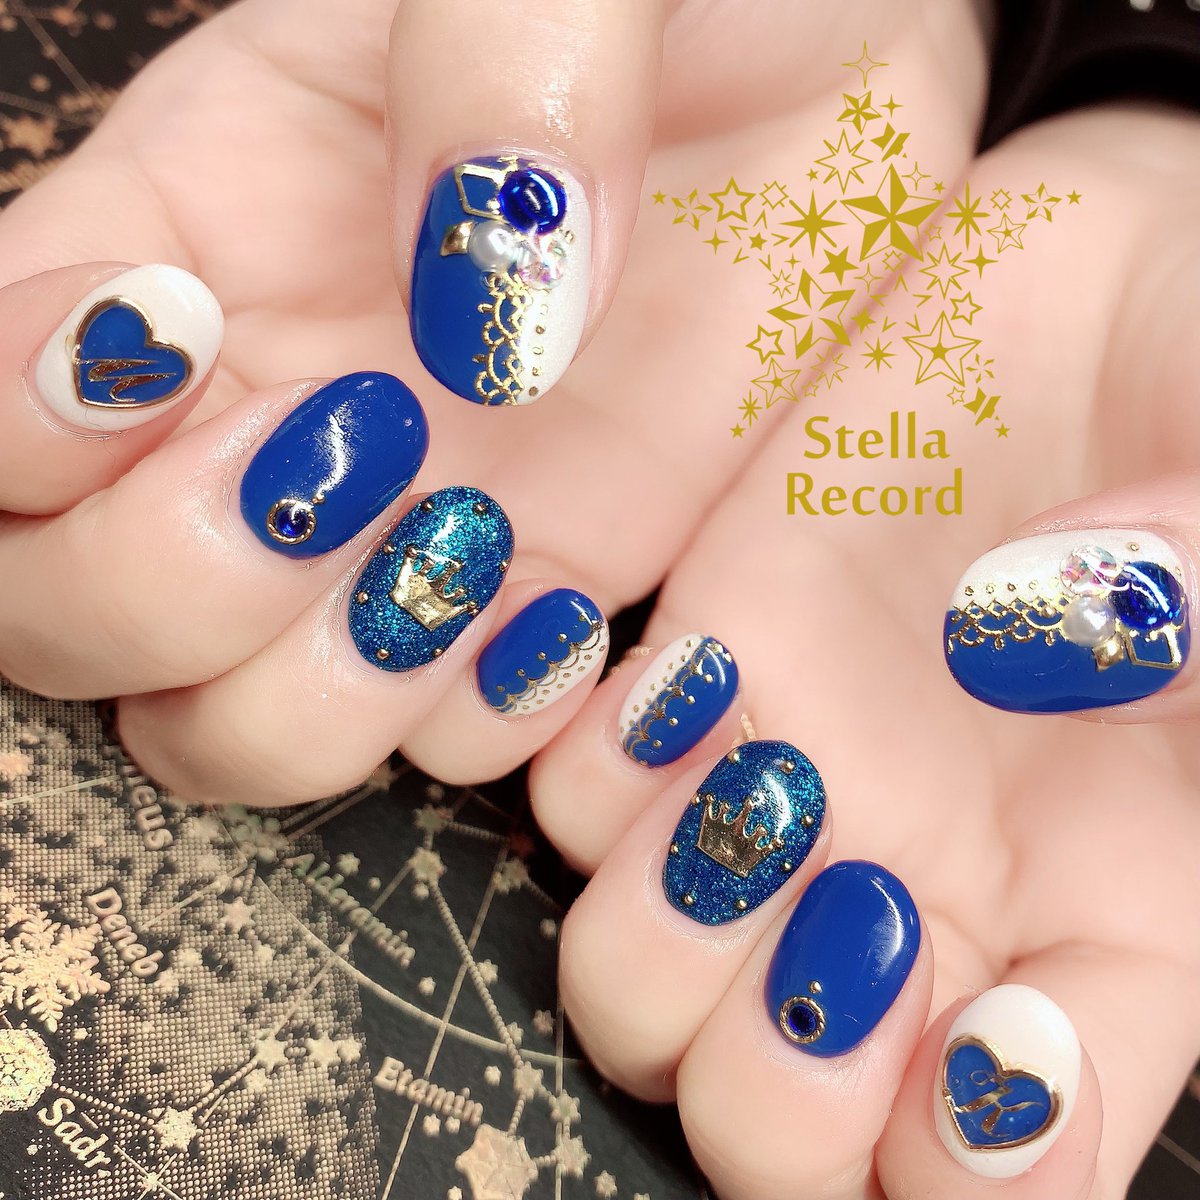 Nail Salon Stella Record در توییتر モチーフネイル カ 松 和田雅成さん キャラクターカラーの青と白で王子様風に というリクエストをいただきデザインさせていただきました